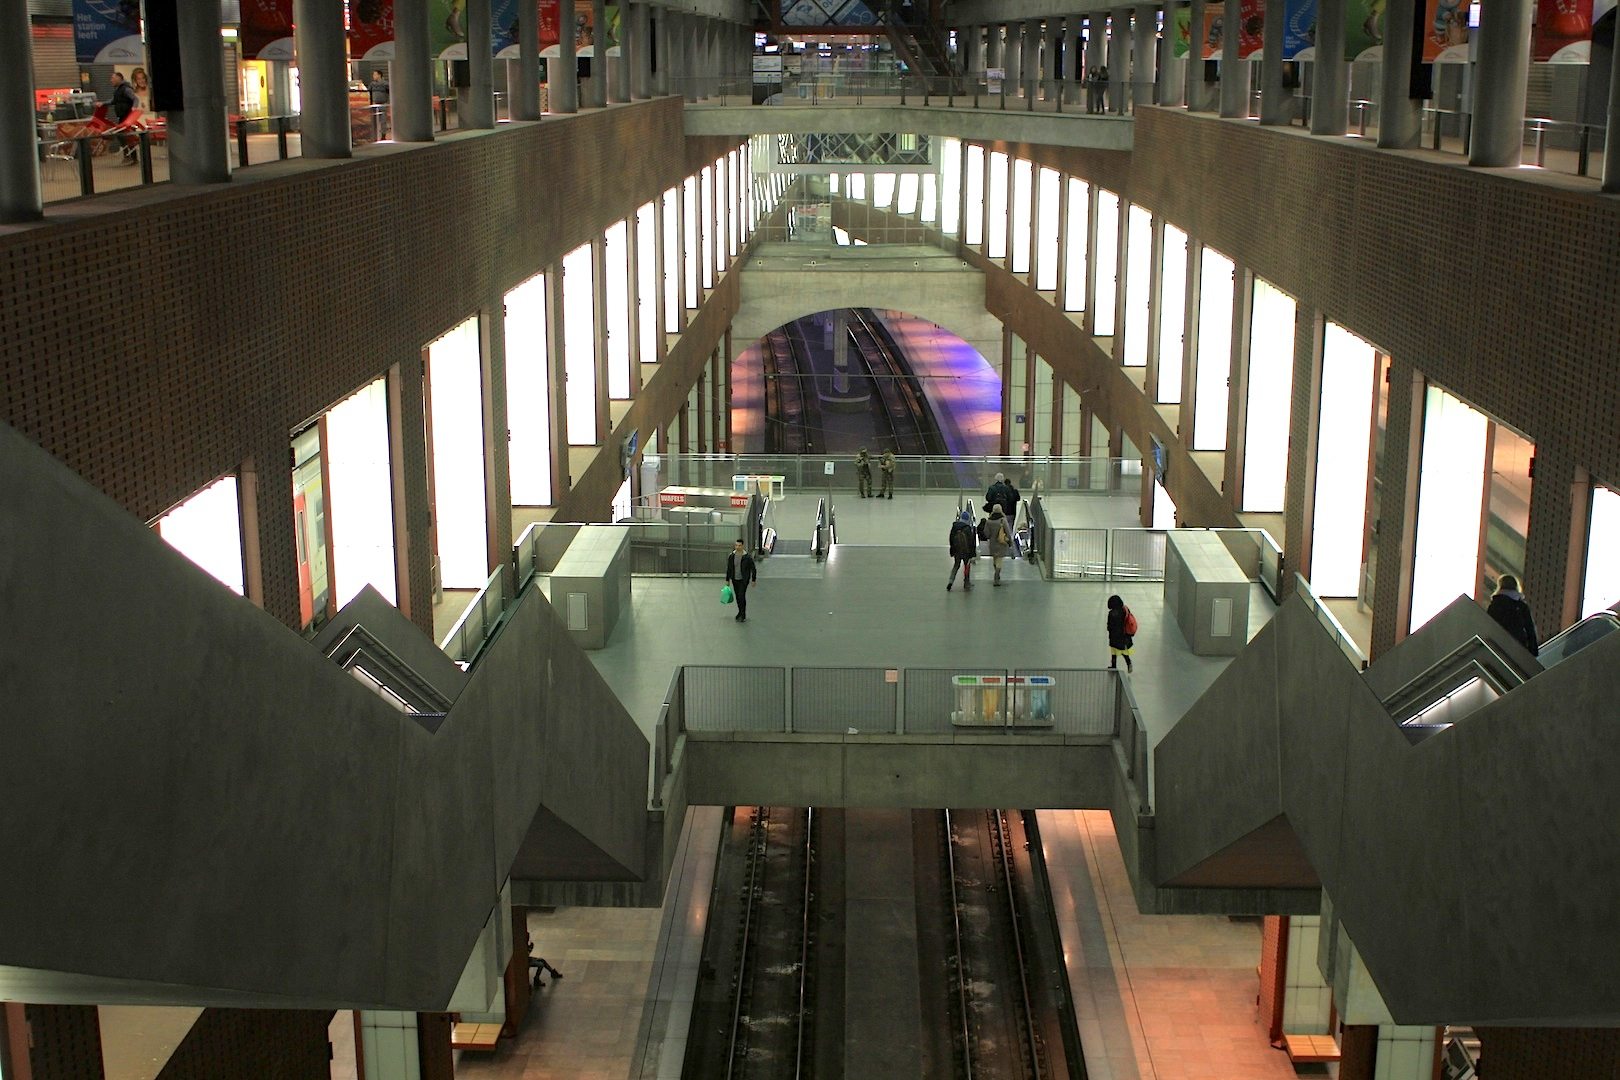 Perspektive, Teil 3. Die Lösung des Genter Architekten Jacques Voncke: die Vertiefung und Untertunnelung des Bahnhofs für Schnellzuganschlüsse